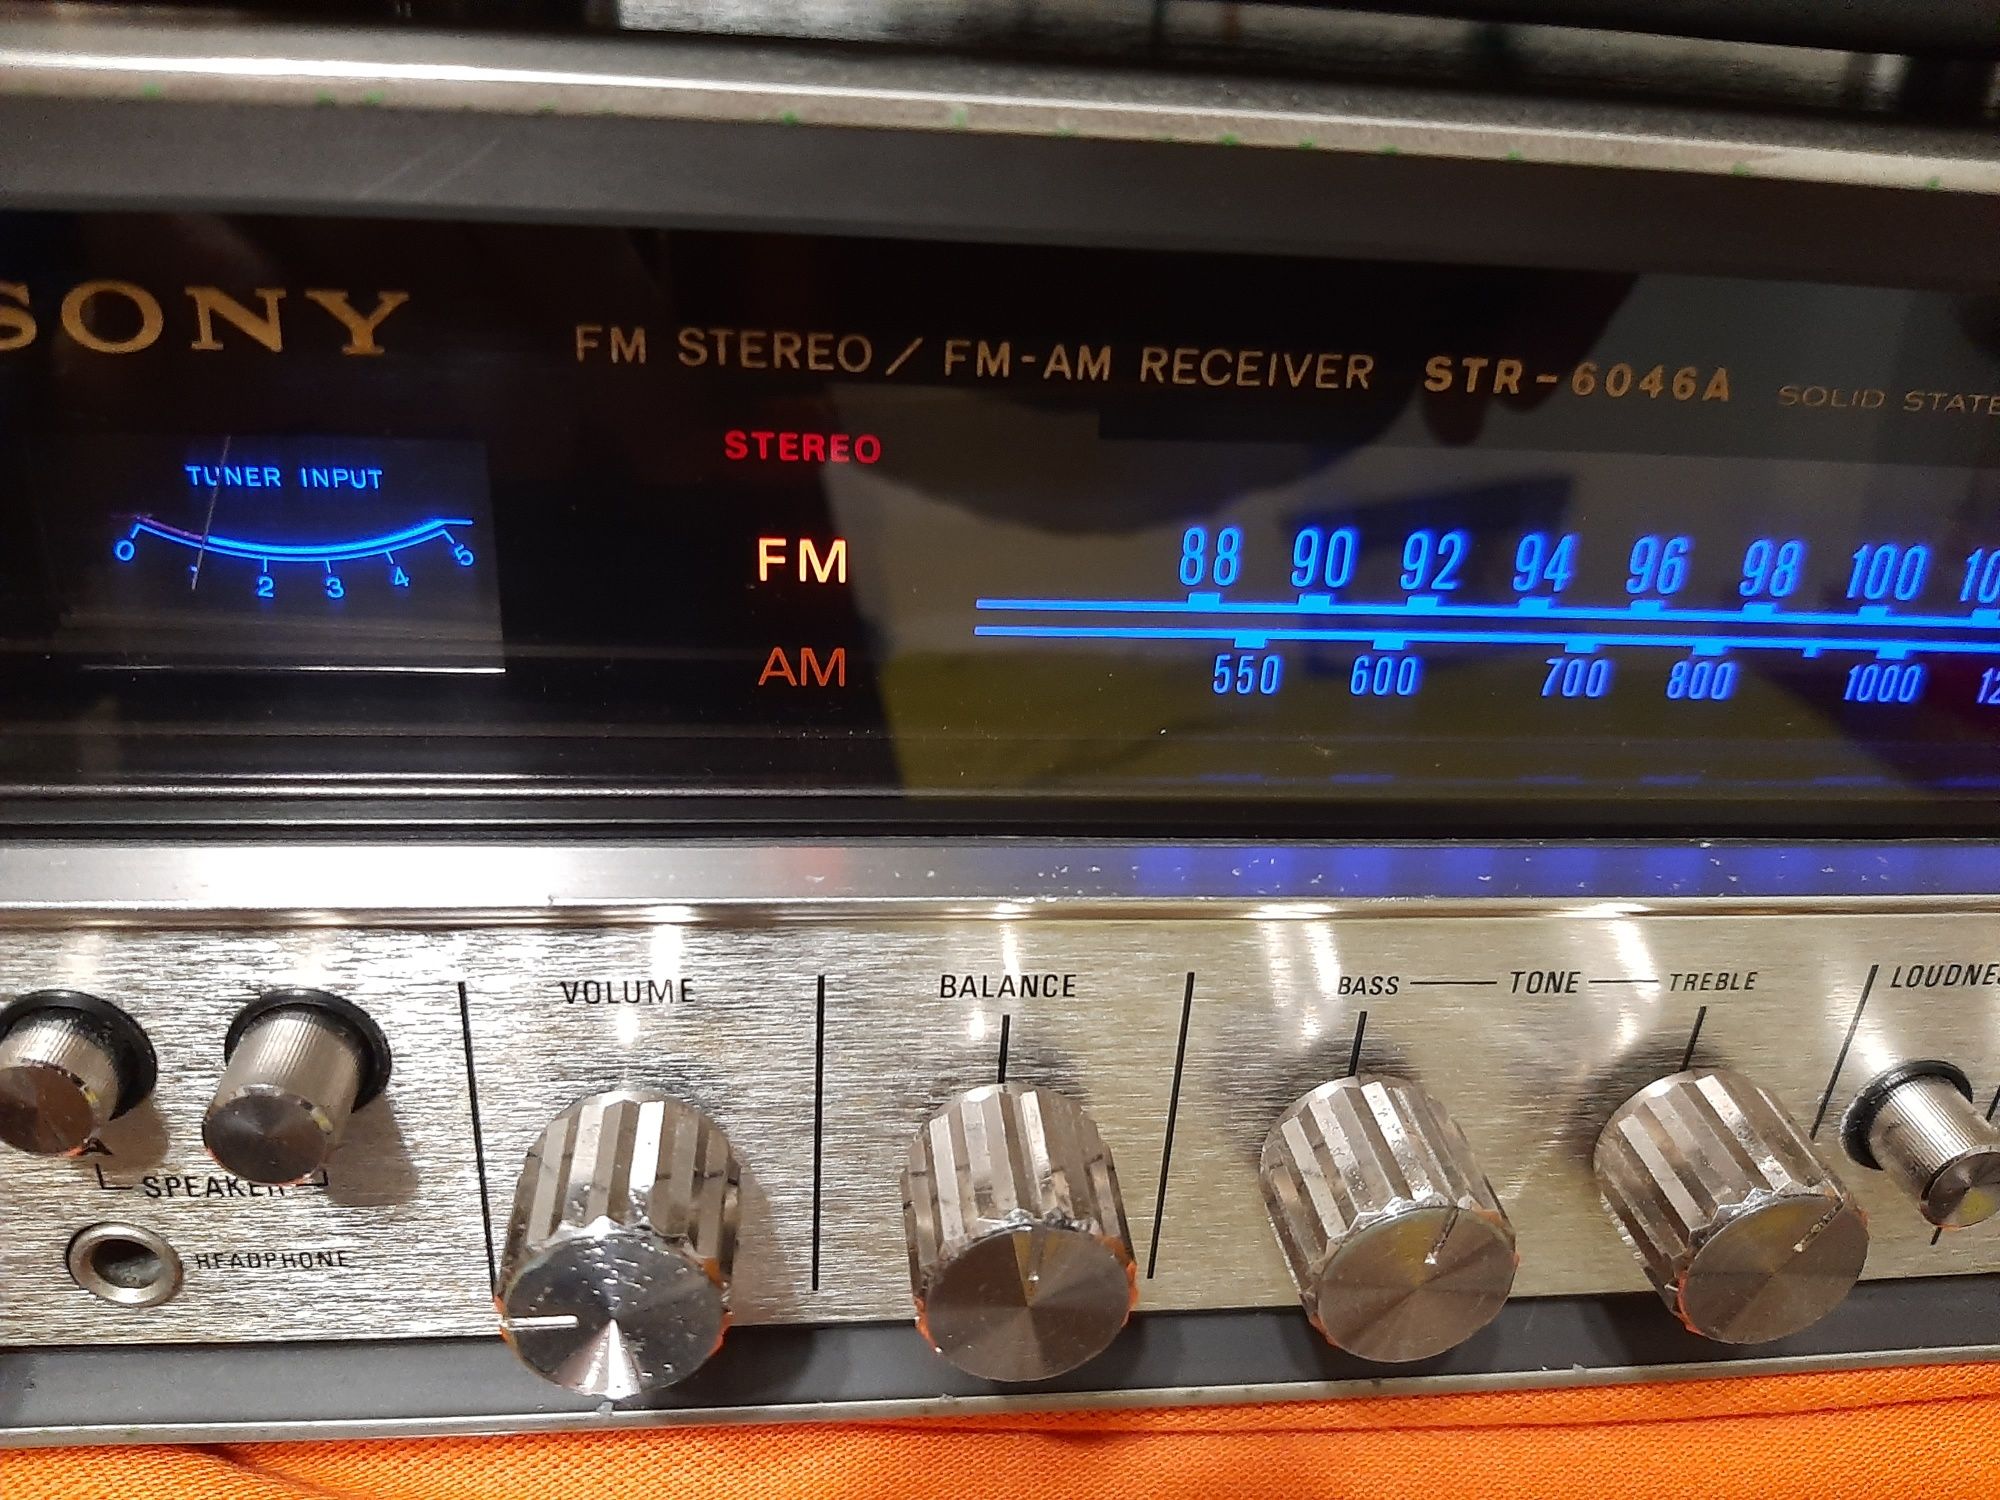 SONY STR 6046A stereo receiver